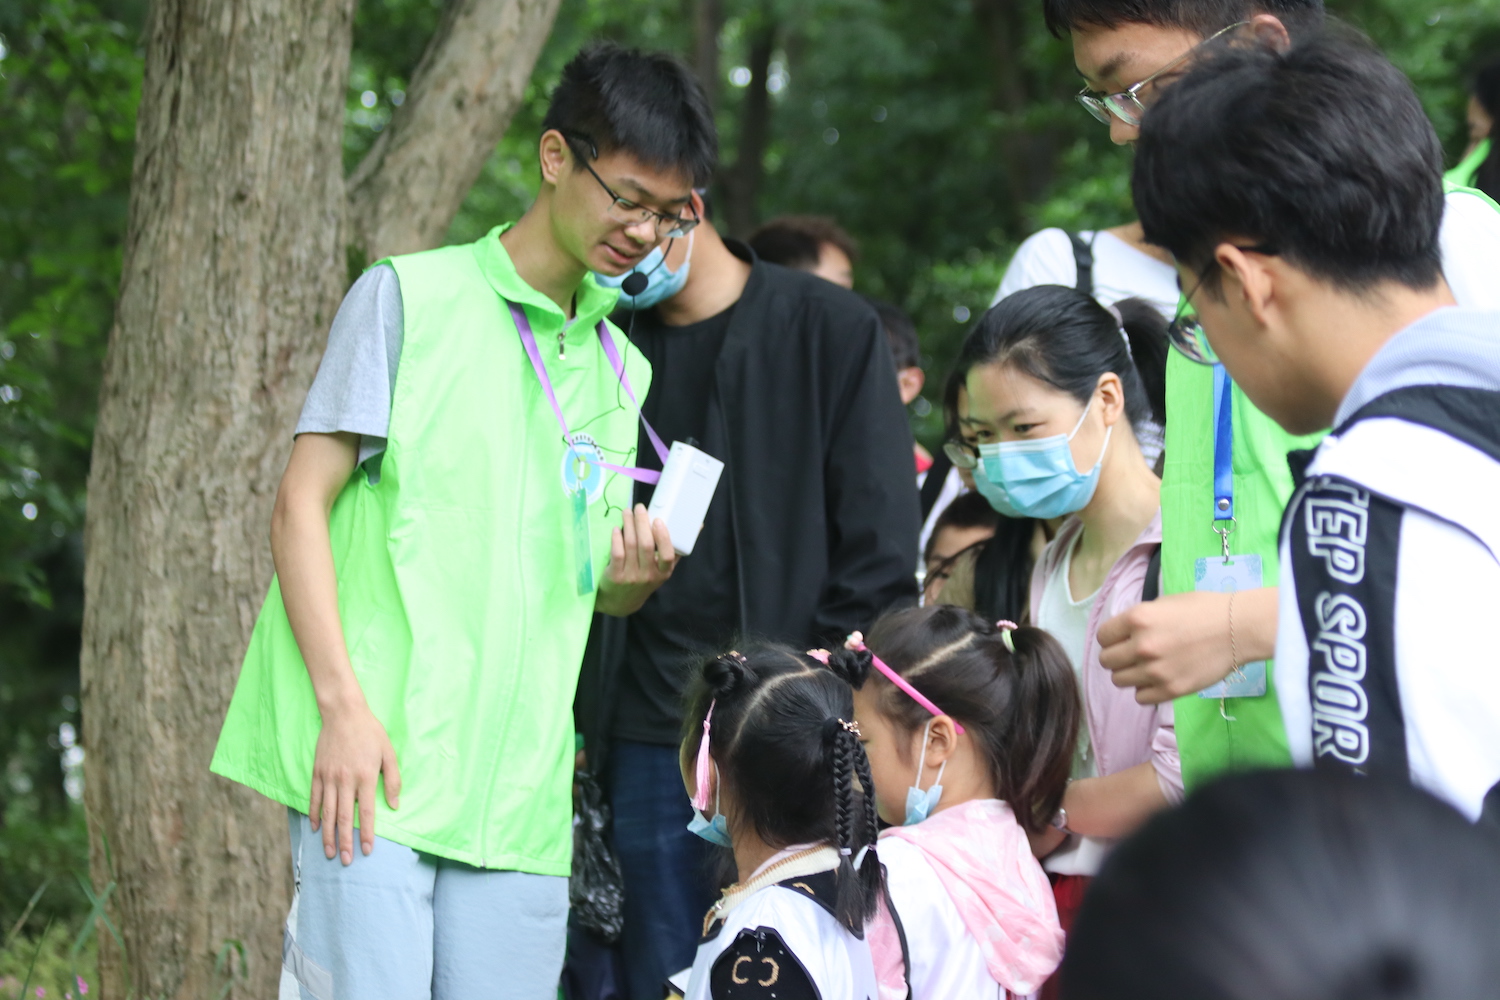 2.绿色协会志愿者带领走进自然，开展生态环境保护宣传教育